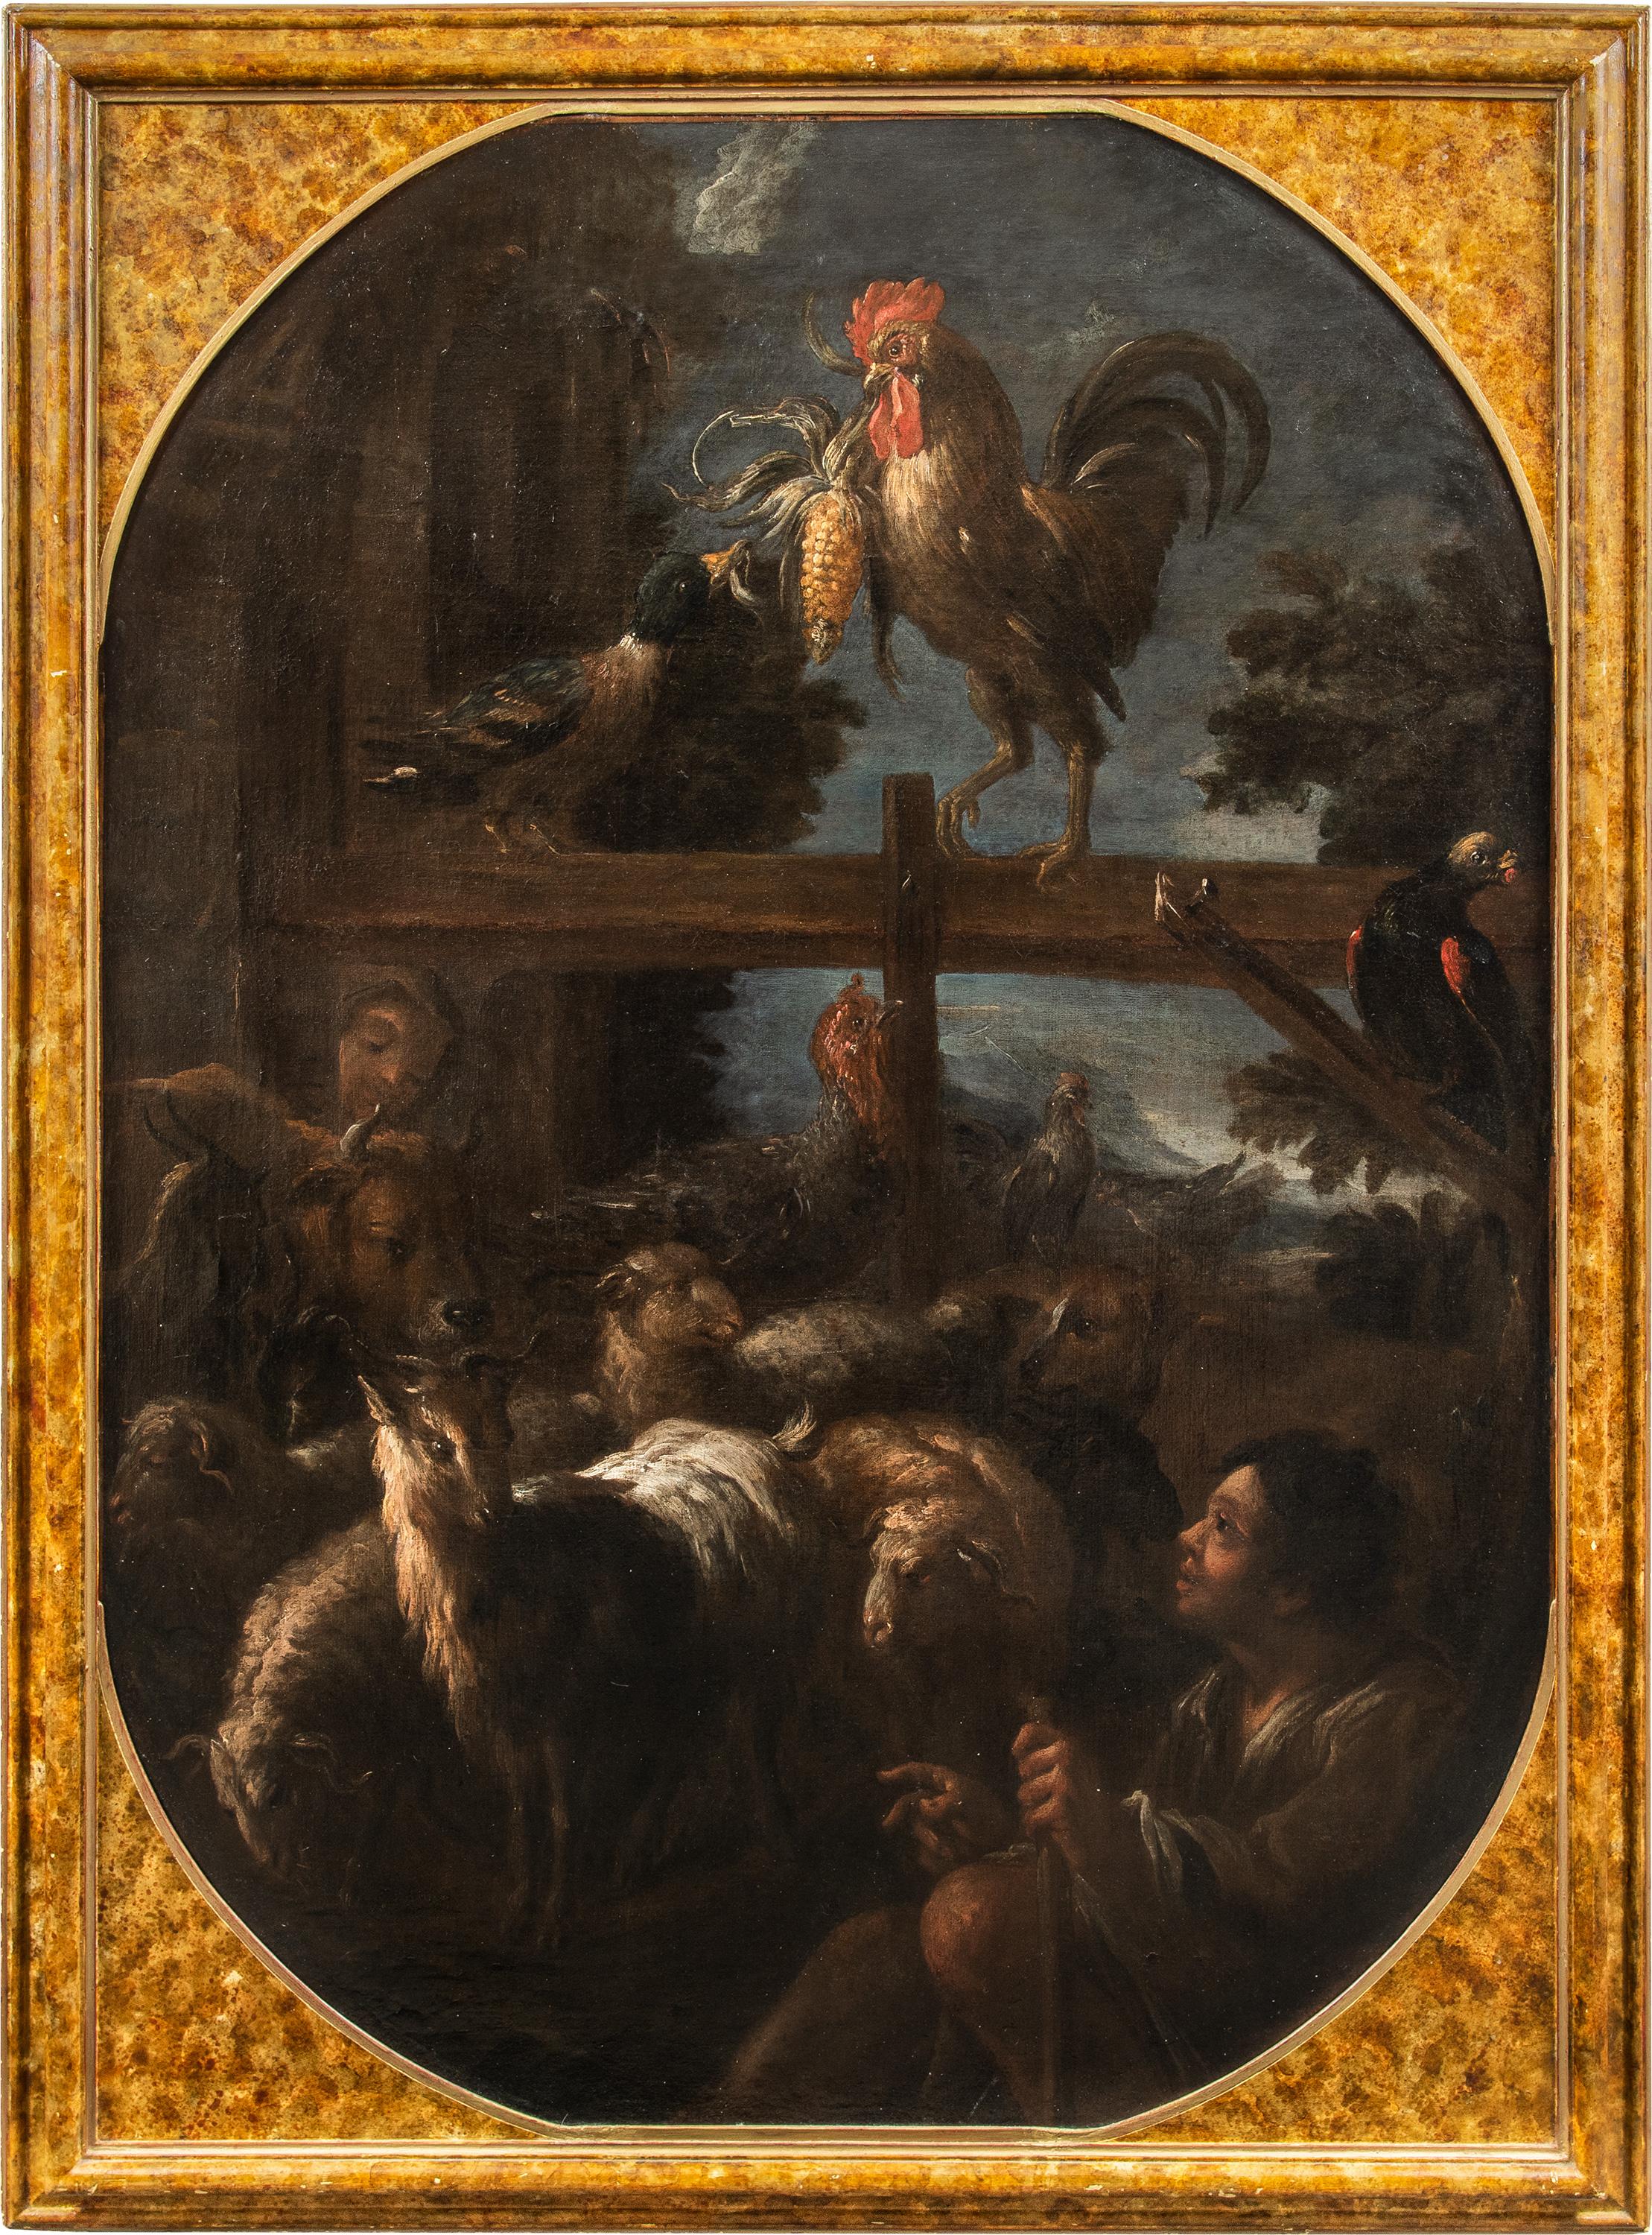 Felice Boselli (Piacenza 1650 - Parma 1732) - Hirte mit Herde und Wild.

155 x 112 cm ohne Rahmen, 170 x 126 cm mit Rahmen.

Öl auf Leinwand, in einem mit Marmorimitat lackierten Holzrahmen.

Das Gemälde weist stilistische Ähnlichkeiten mit dem